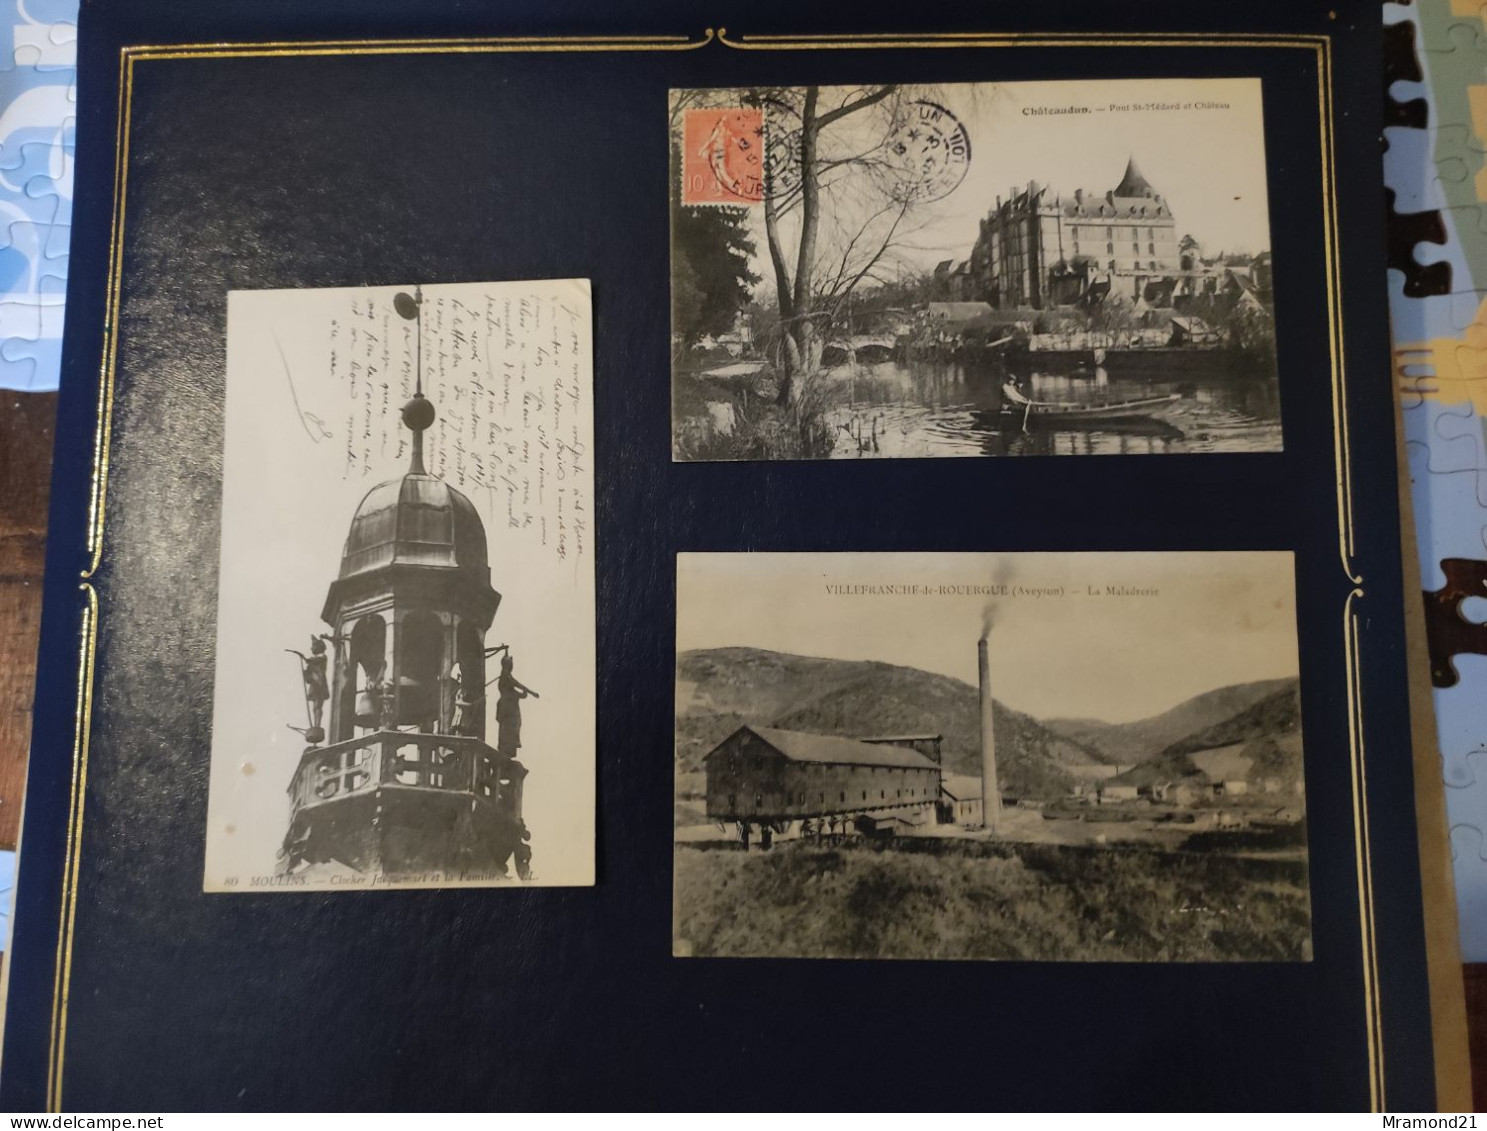 Lot de 96 cartes postales anciennes